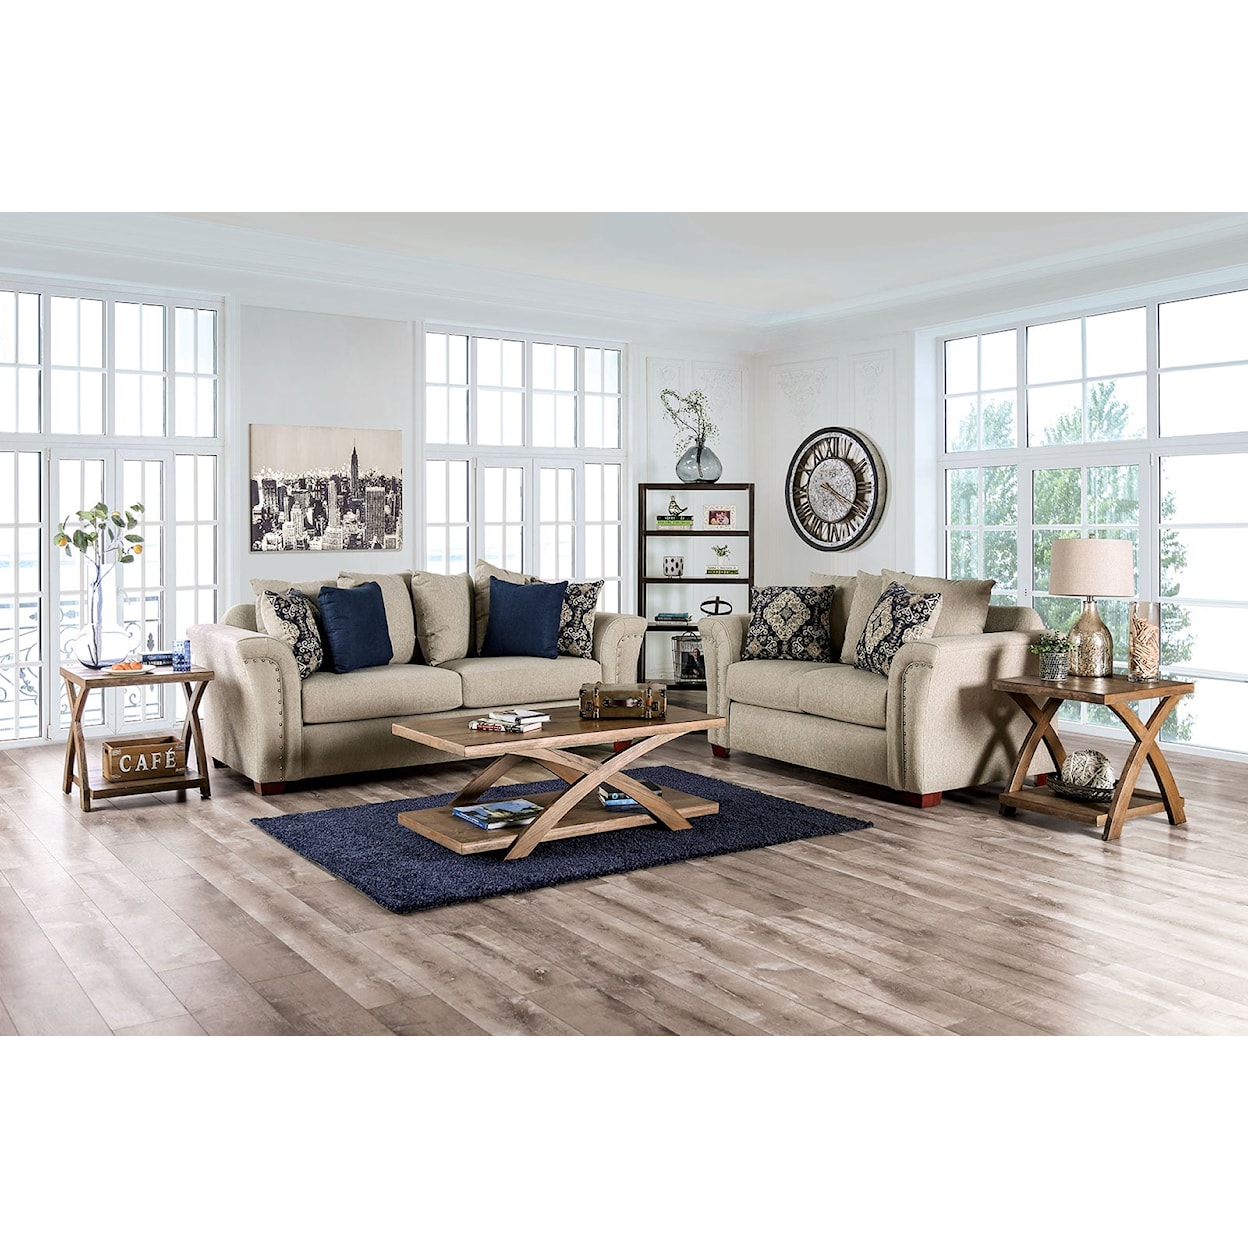 Furniture of America Belsize 2-Piece Living Room Set